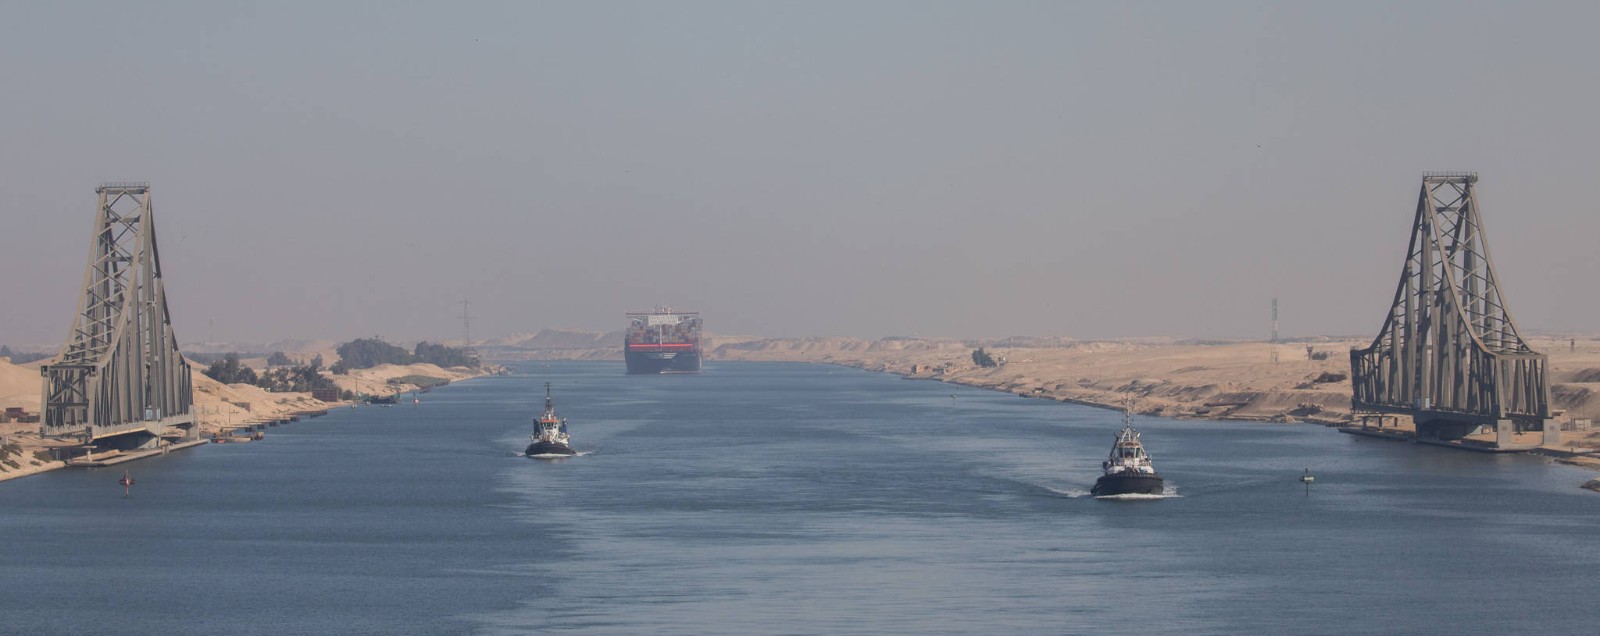 苏伊士运河明年1月起将船舶过境费上调5%-15%